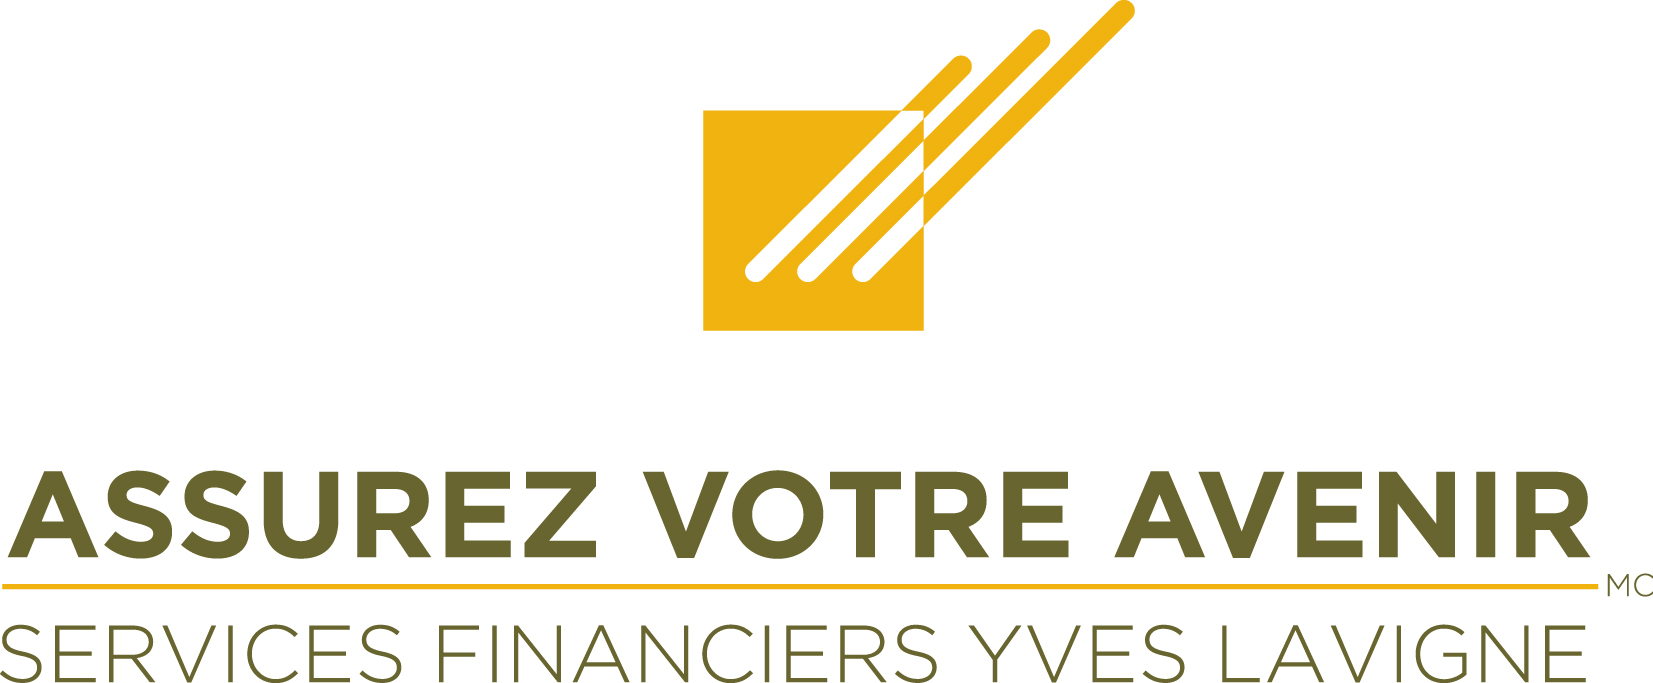 Assurez Votre Avenir Services Financiers Yves Lavigne